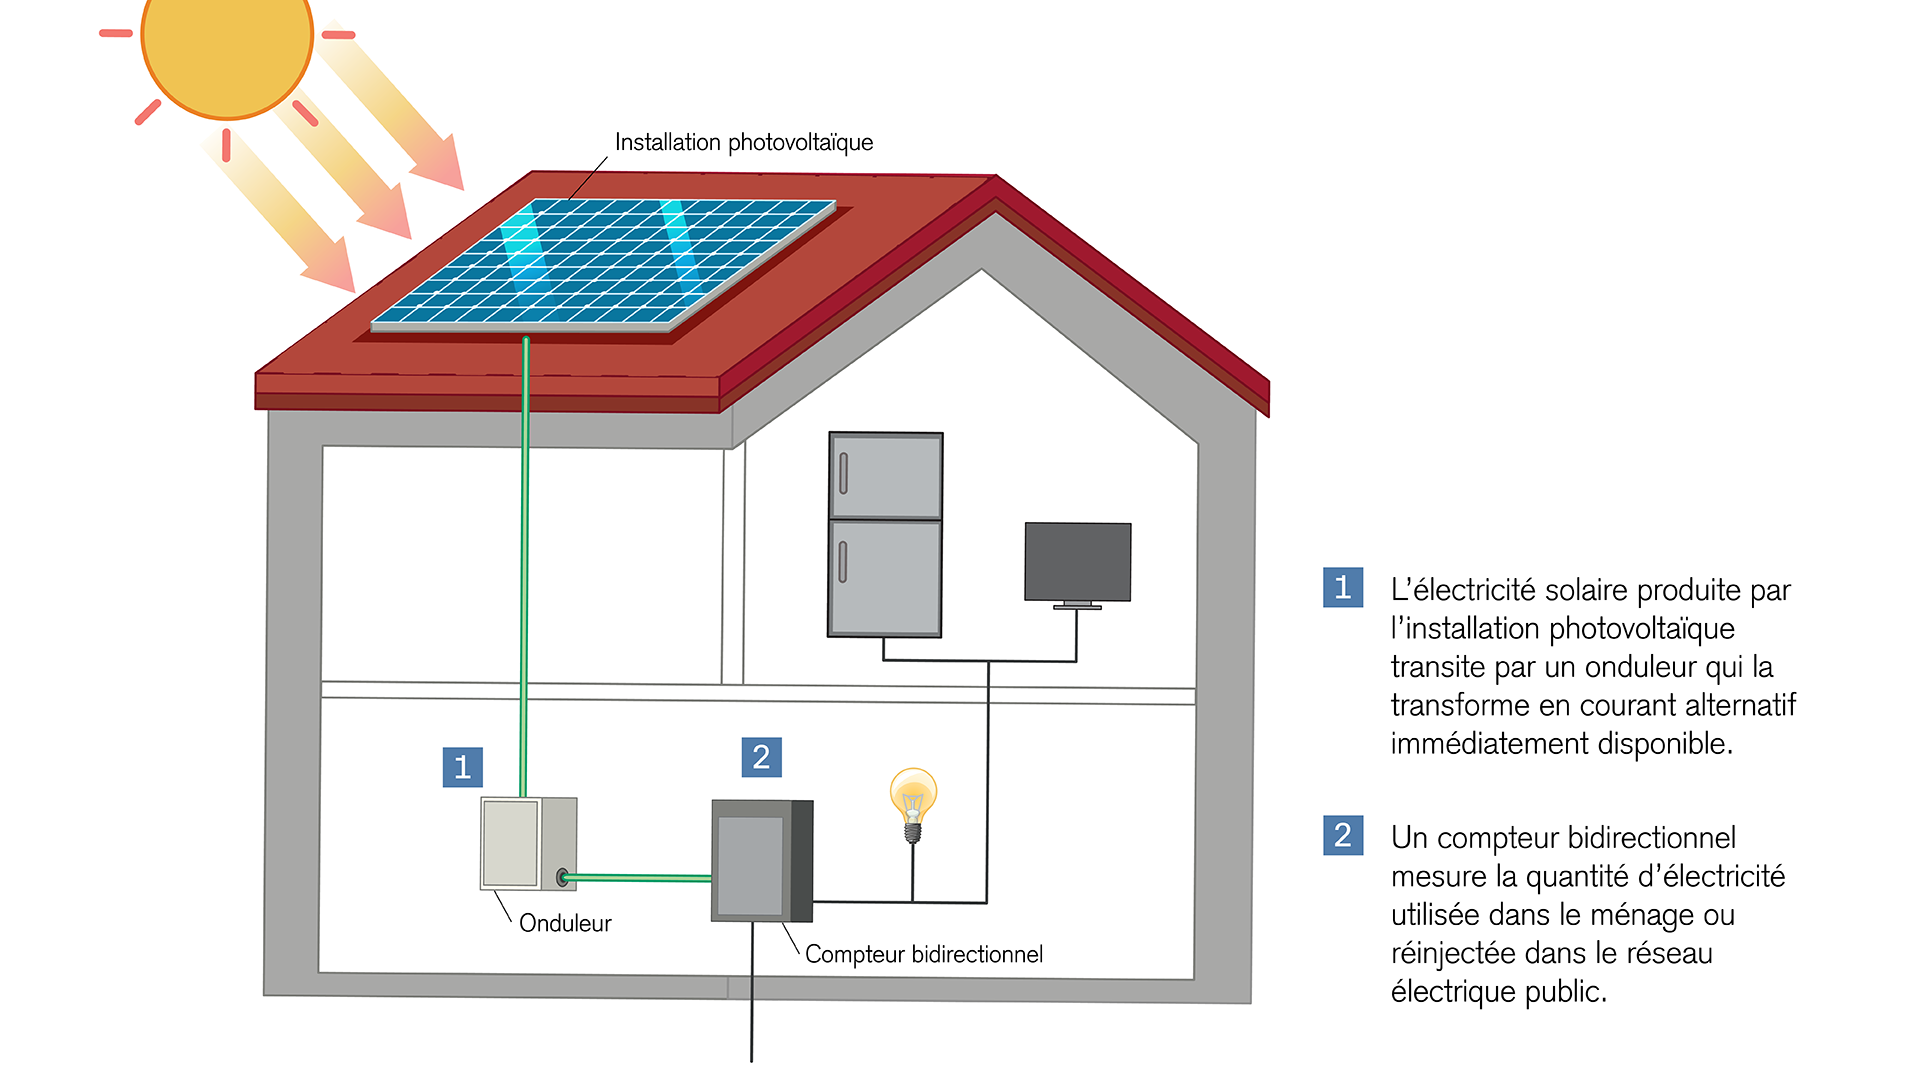 Installation photovoltaïque: conversion de la lumière solaire en électricité